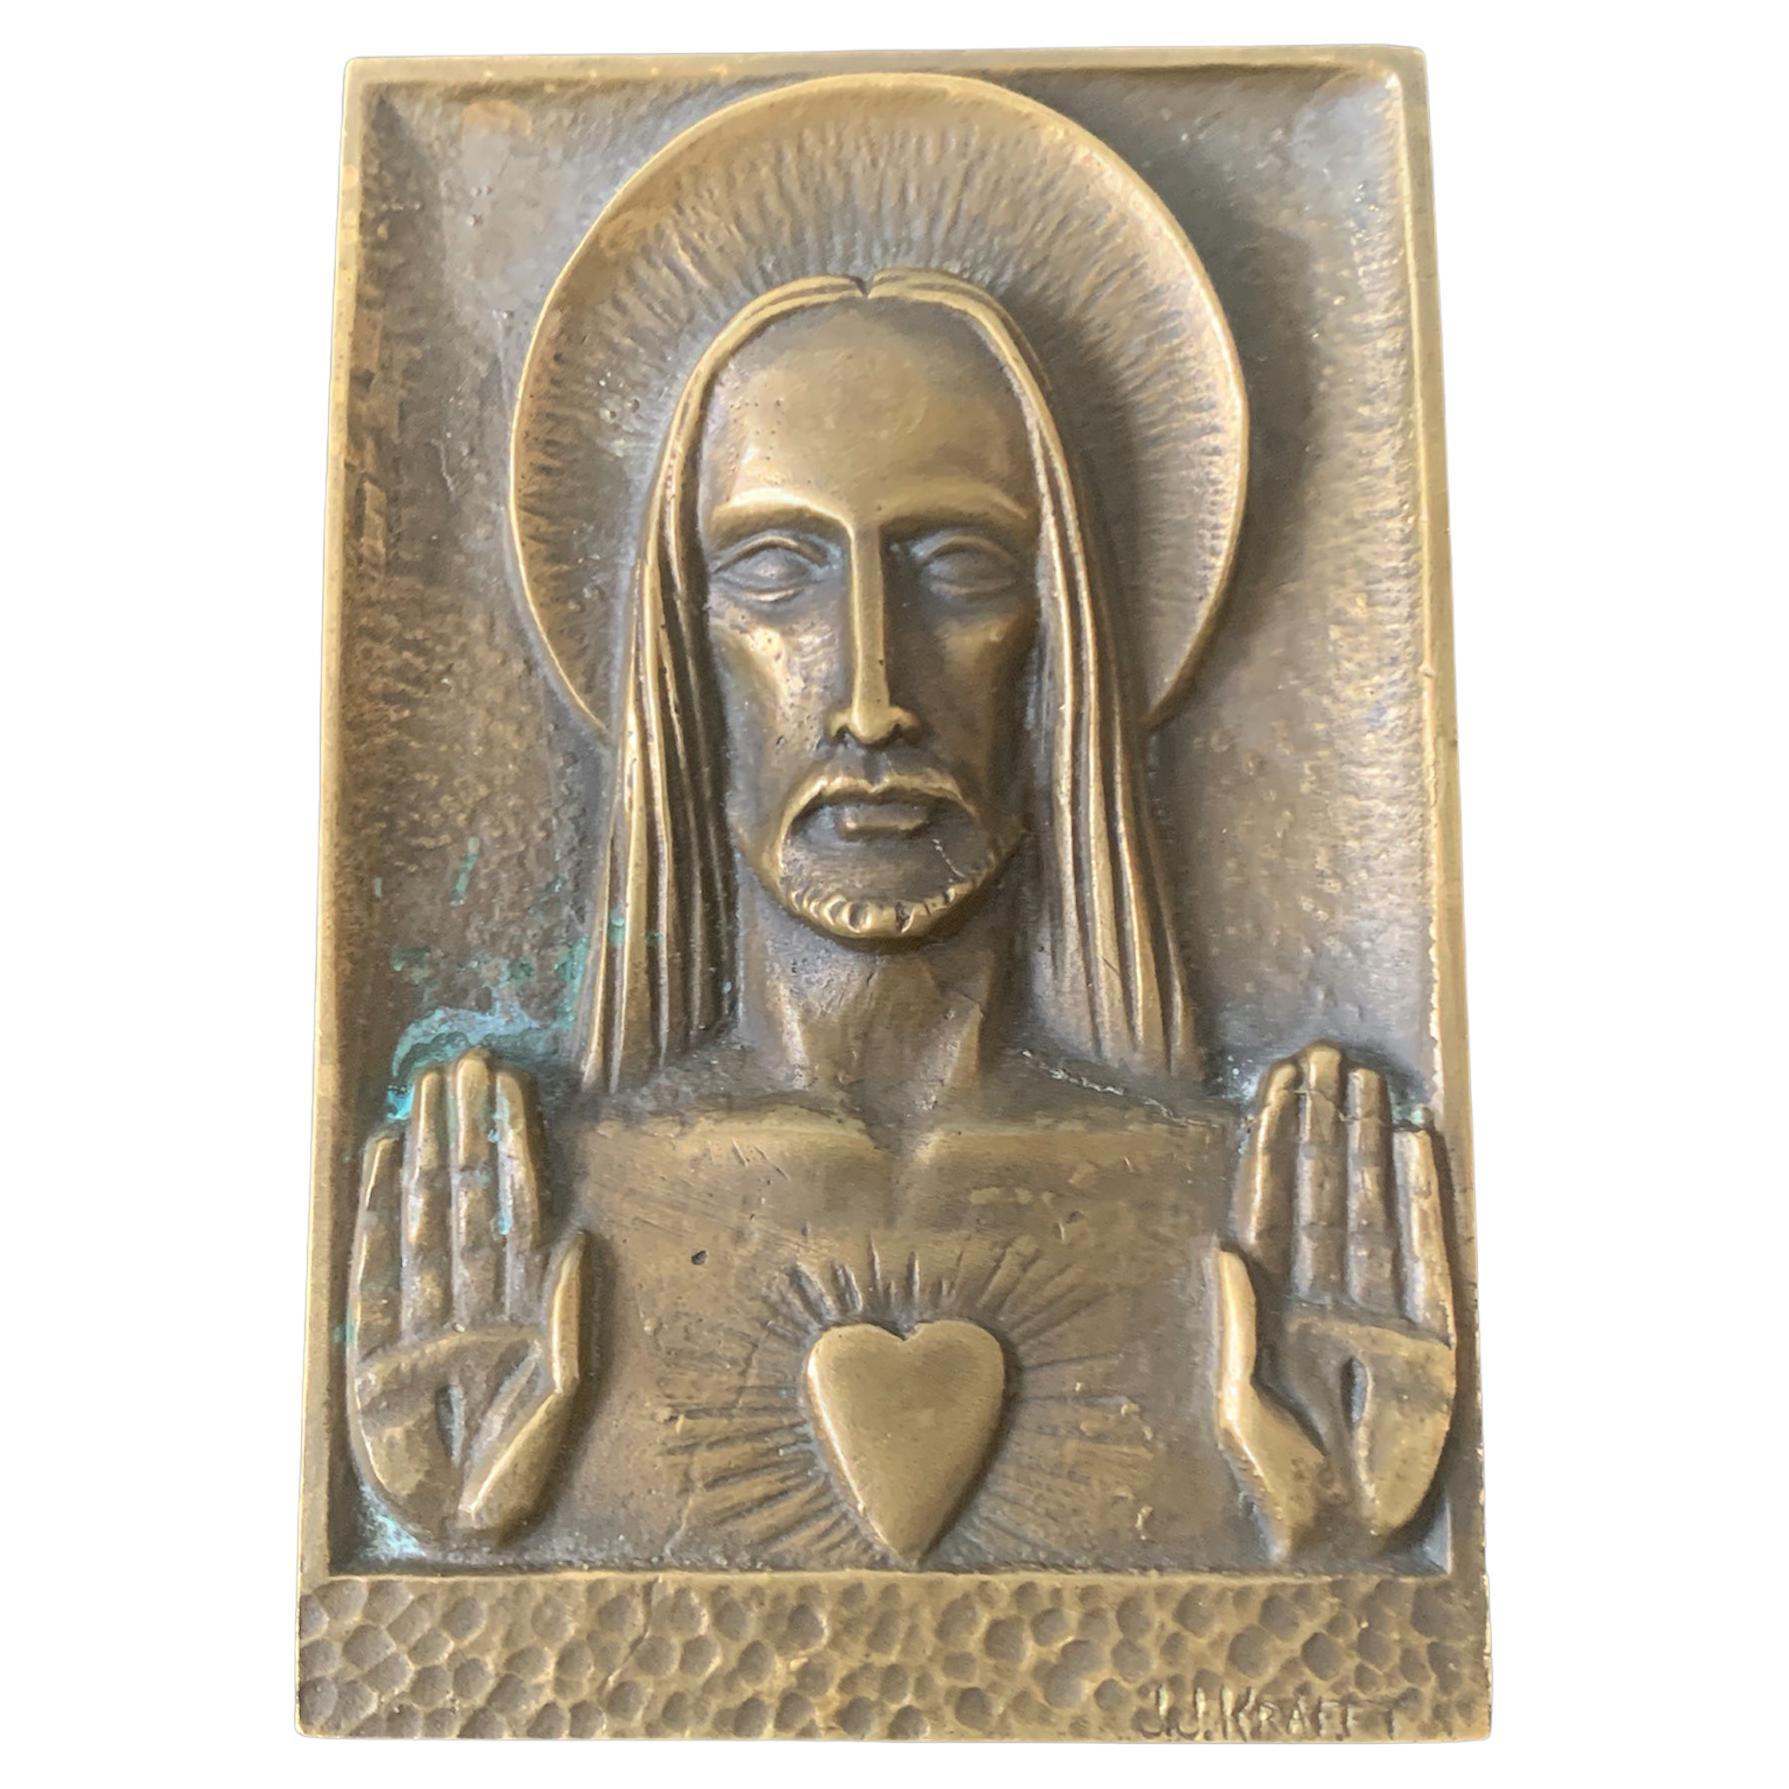 Religiöse Plakette aus Bronze von Jeans – Jacques Kraftt